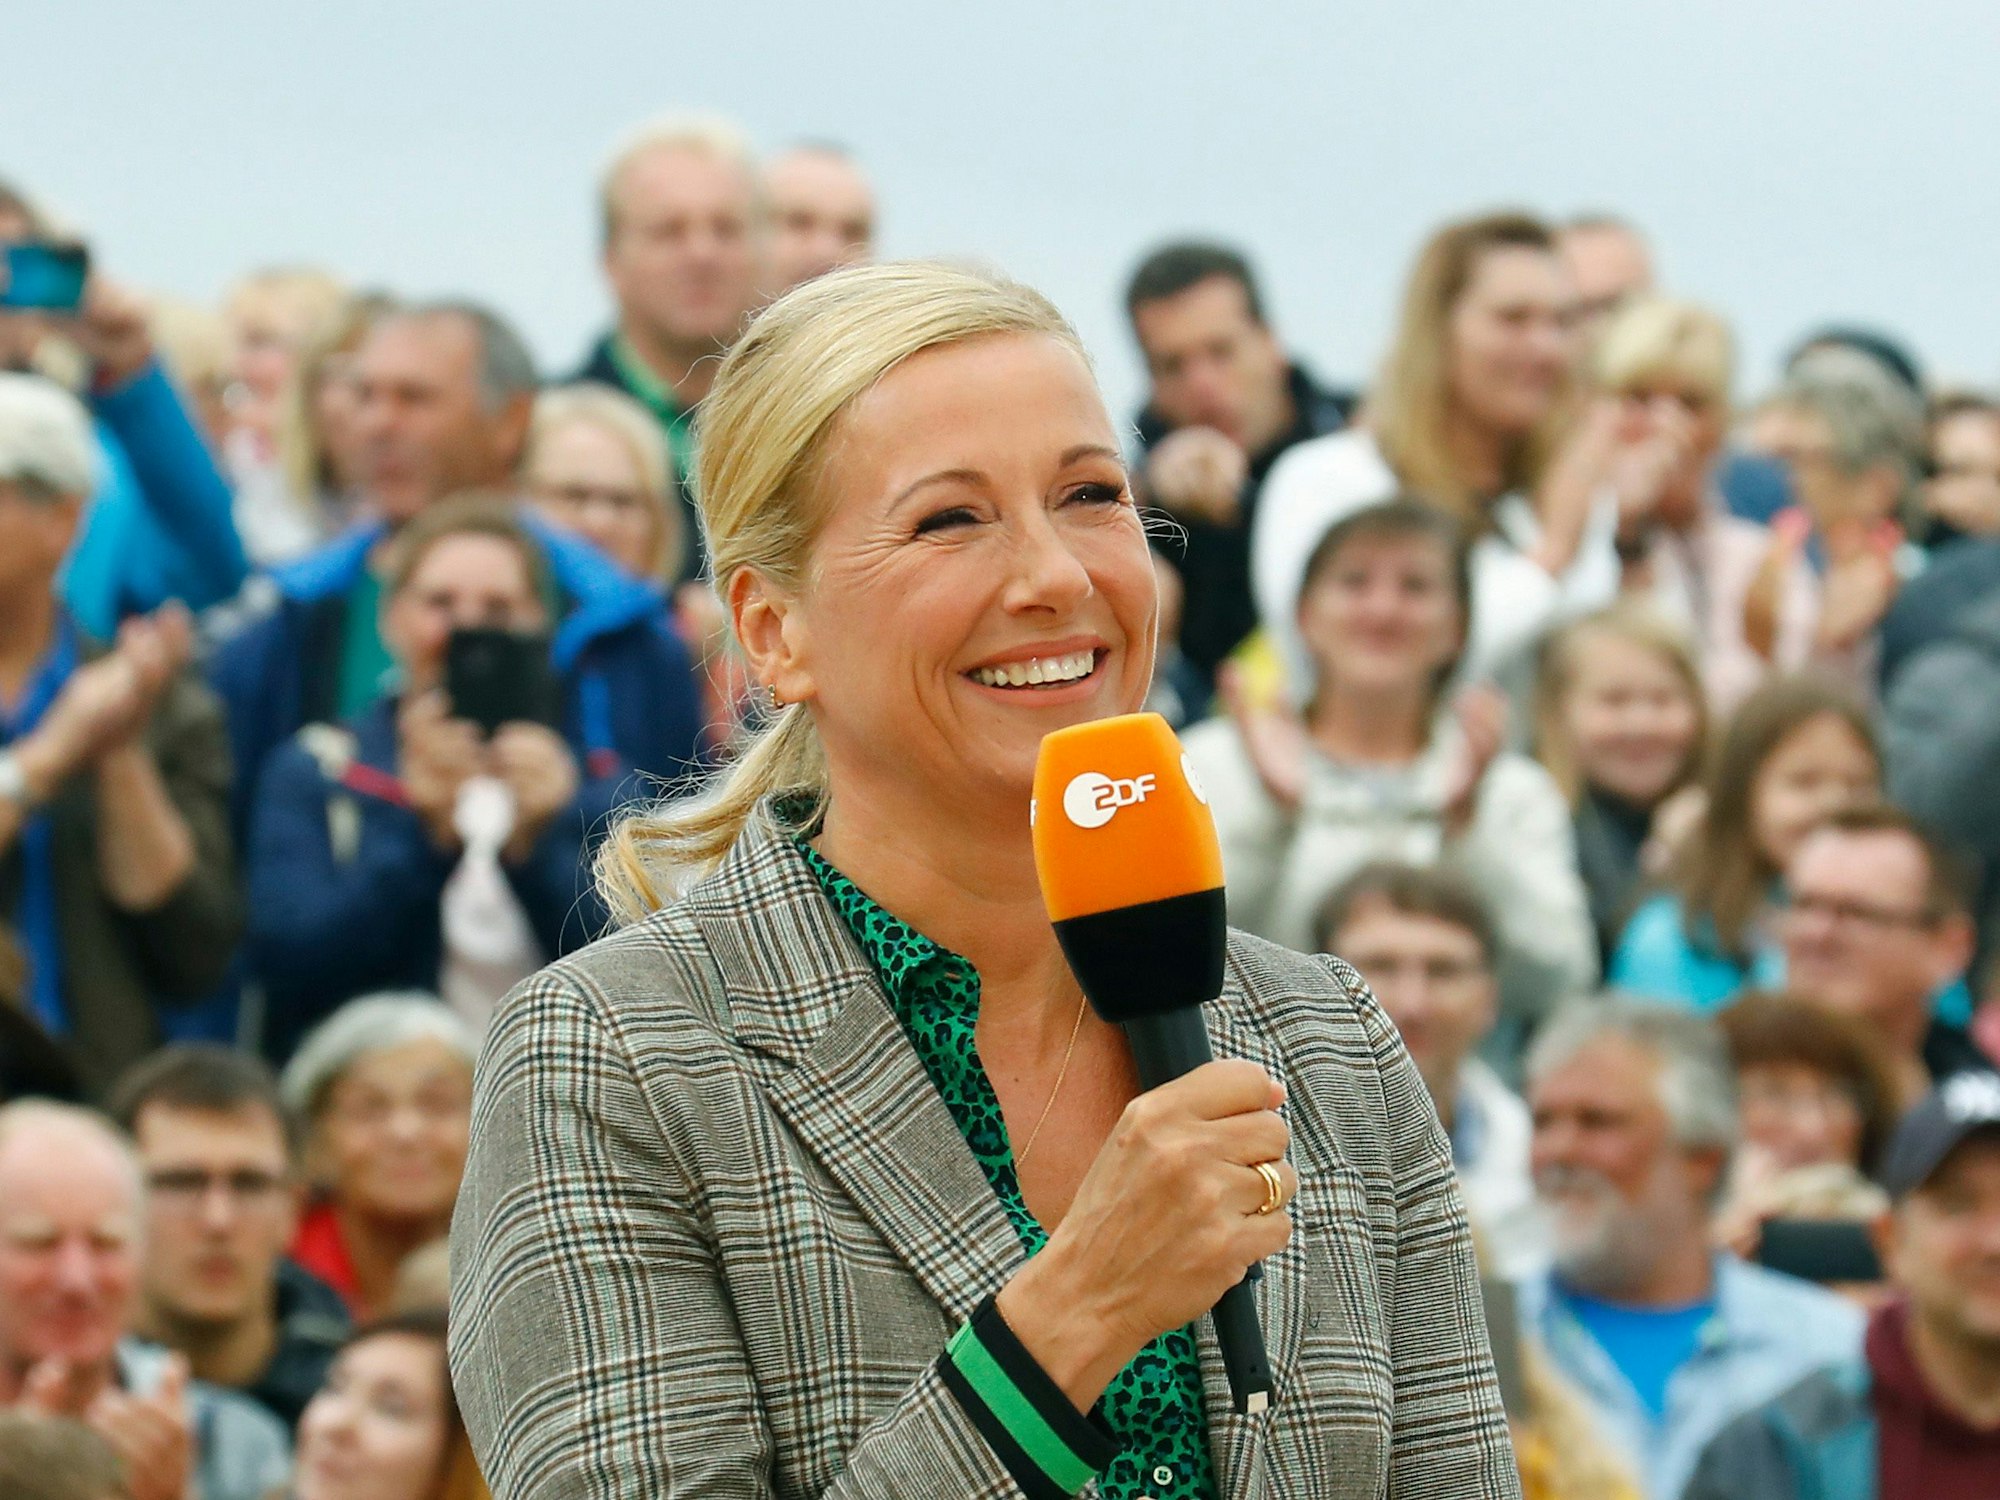 Andrea Kiewel, Moderatorin des "ZDF-Fernsehgartens", aufgenommen während einer Show.